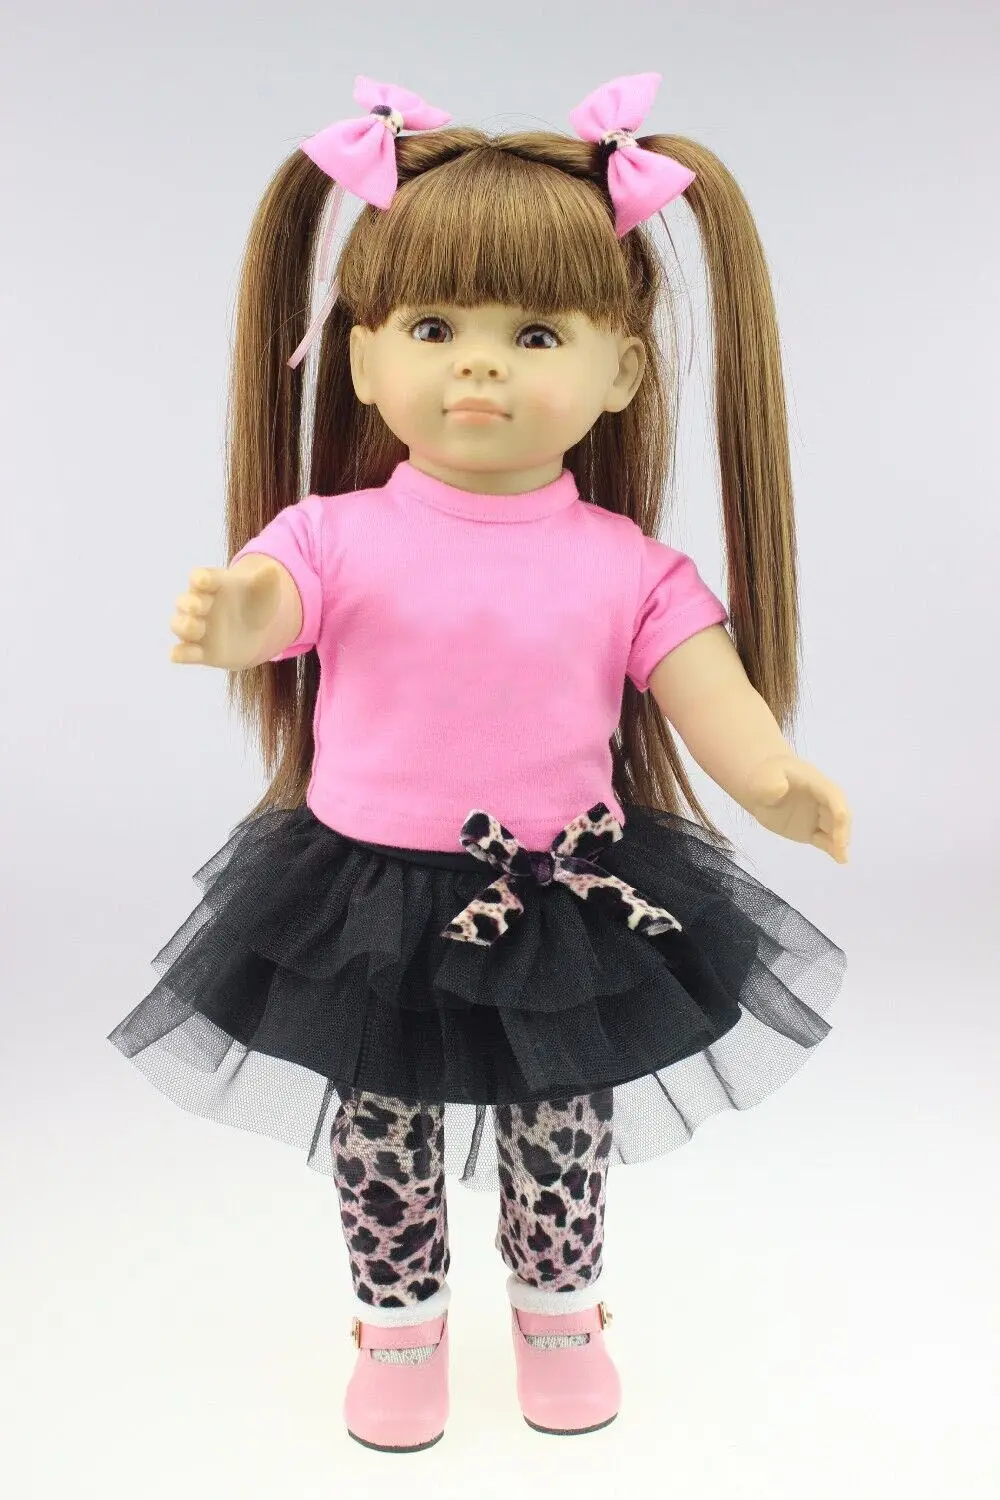 Npkколлекционная кукла-Реборн, Реалистичная мягкая силиконовая кукла-реборн для маленьких девочек, 18 дюймов, очаровательные игрушки для детей